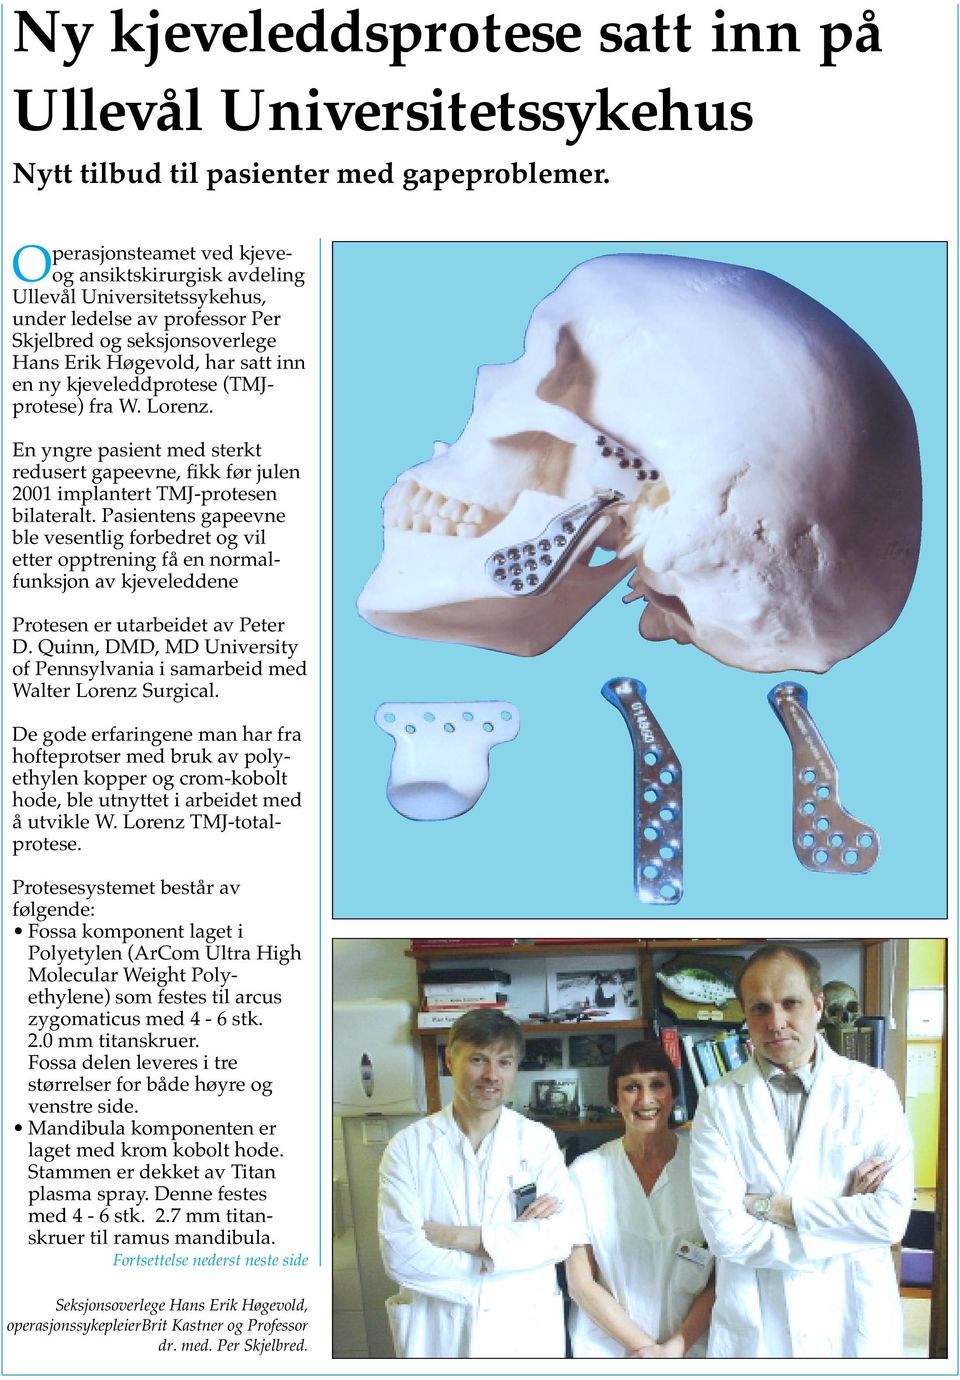 kjeveleddprotese (TMJprotese) fra W. Lorenz. En yngre pasient med sterkt redusert gapeevne, fikk før julen 2001 implantert TMJ-protesen bilateralt.